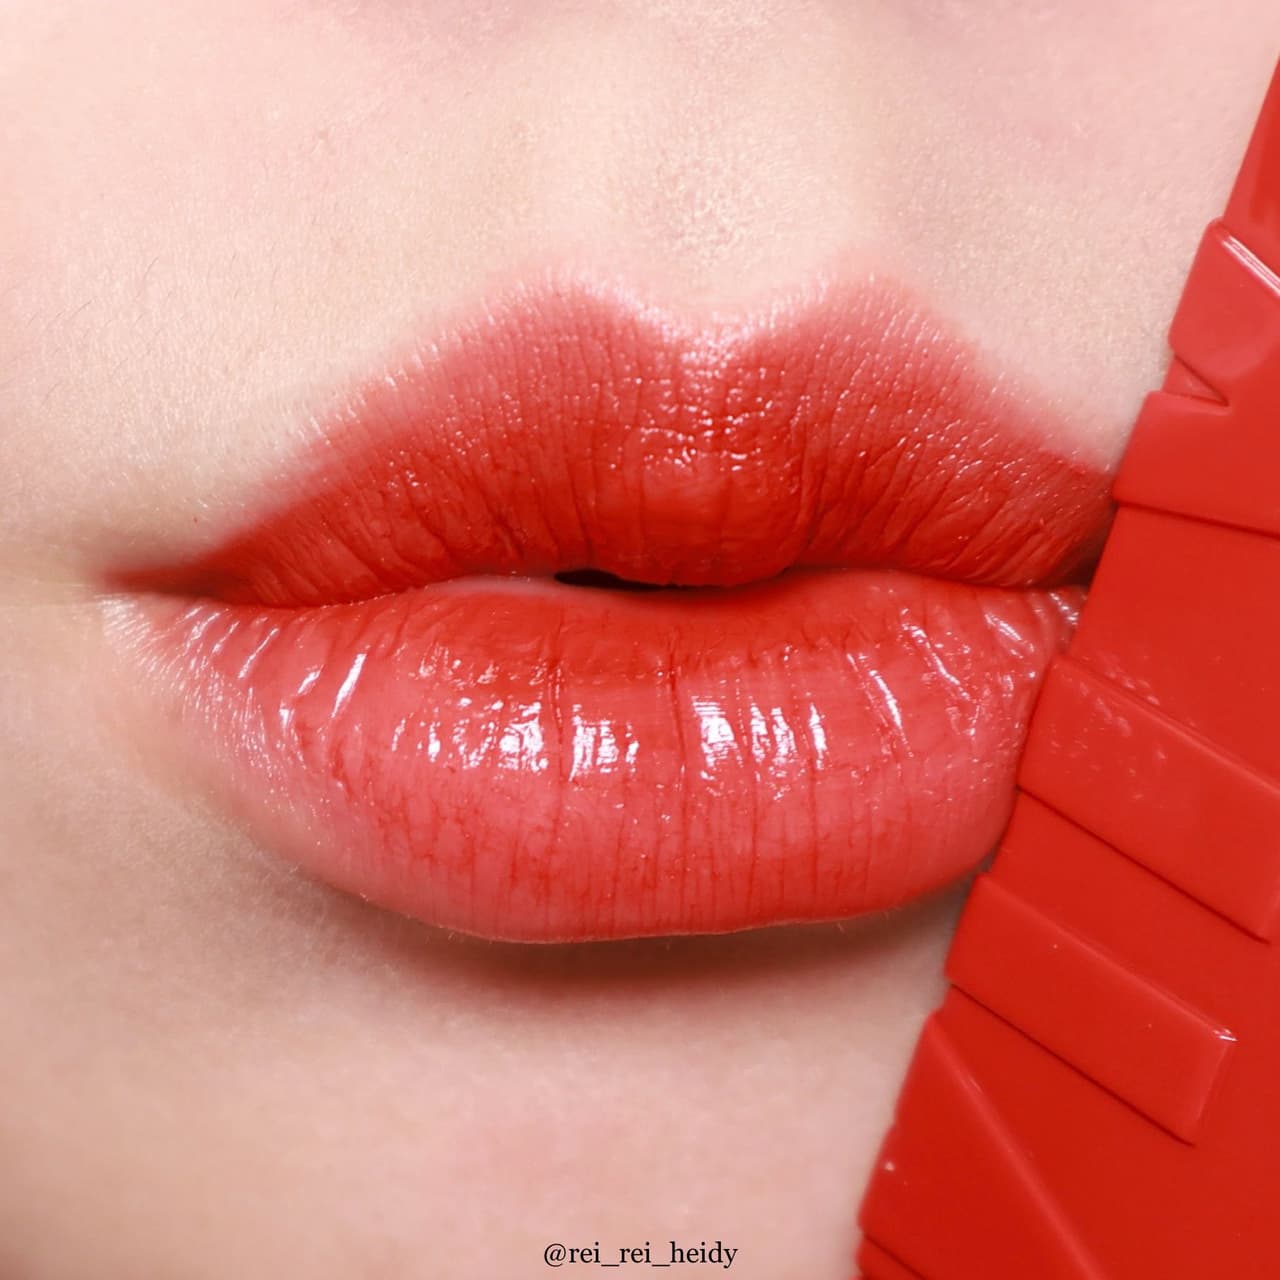 紅紅的嘴唇和粉紅色的吻圖為國際接吻日, 國際接吻日, 吻天, 紅唇紅色素材圖案，PSD和PNG圖片免費下載